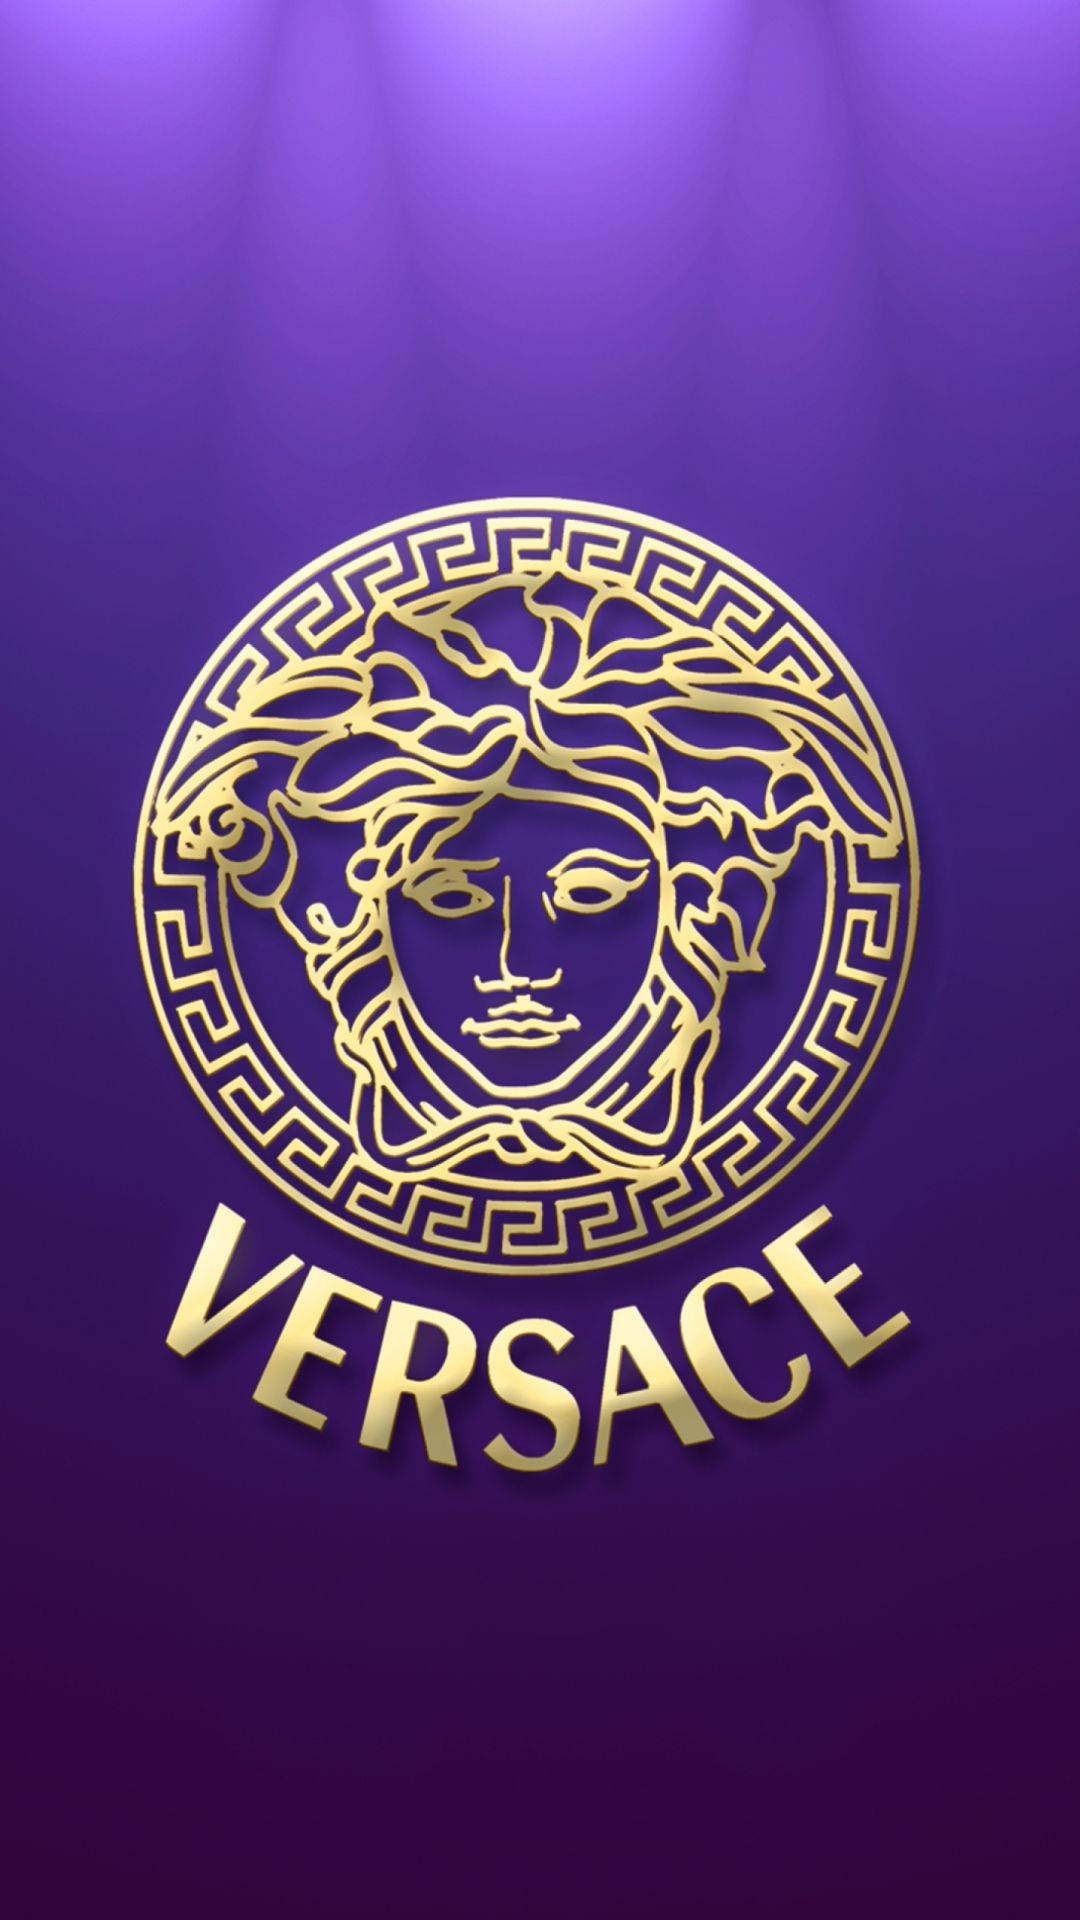 Oicônico Logotipo Retro Da Versace. Papel de Parede